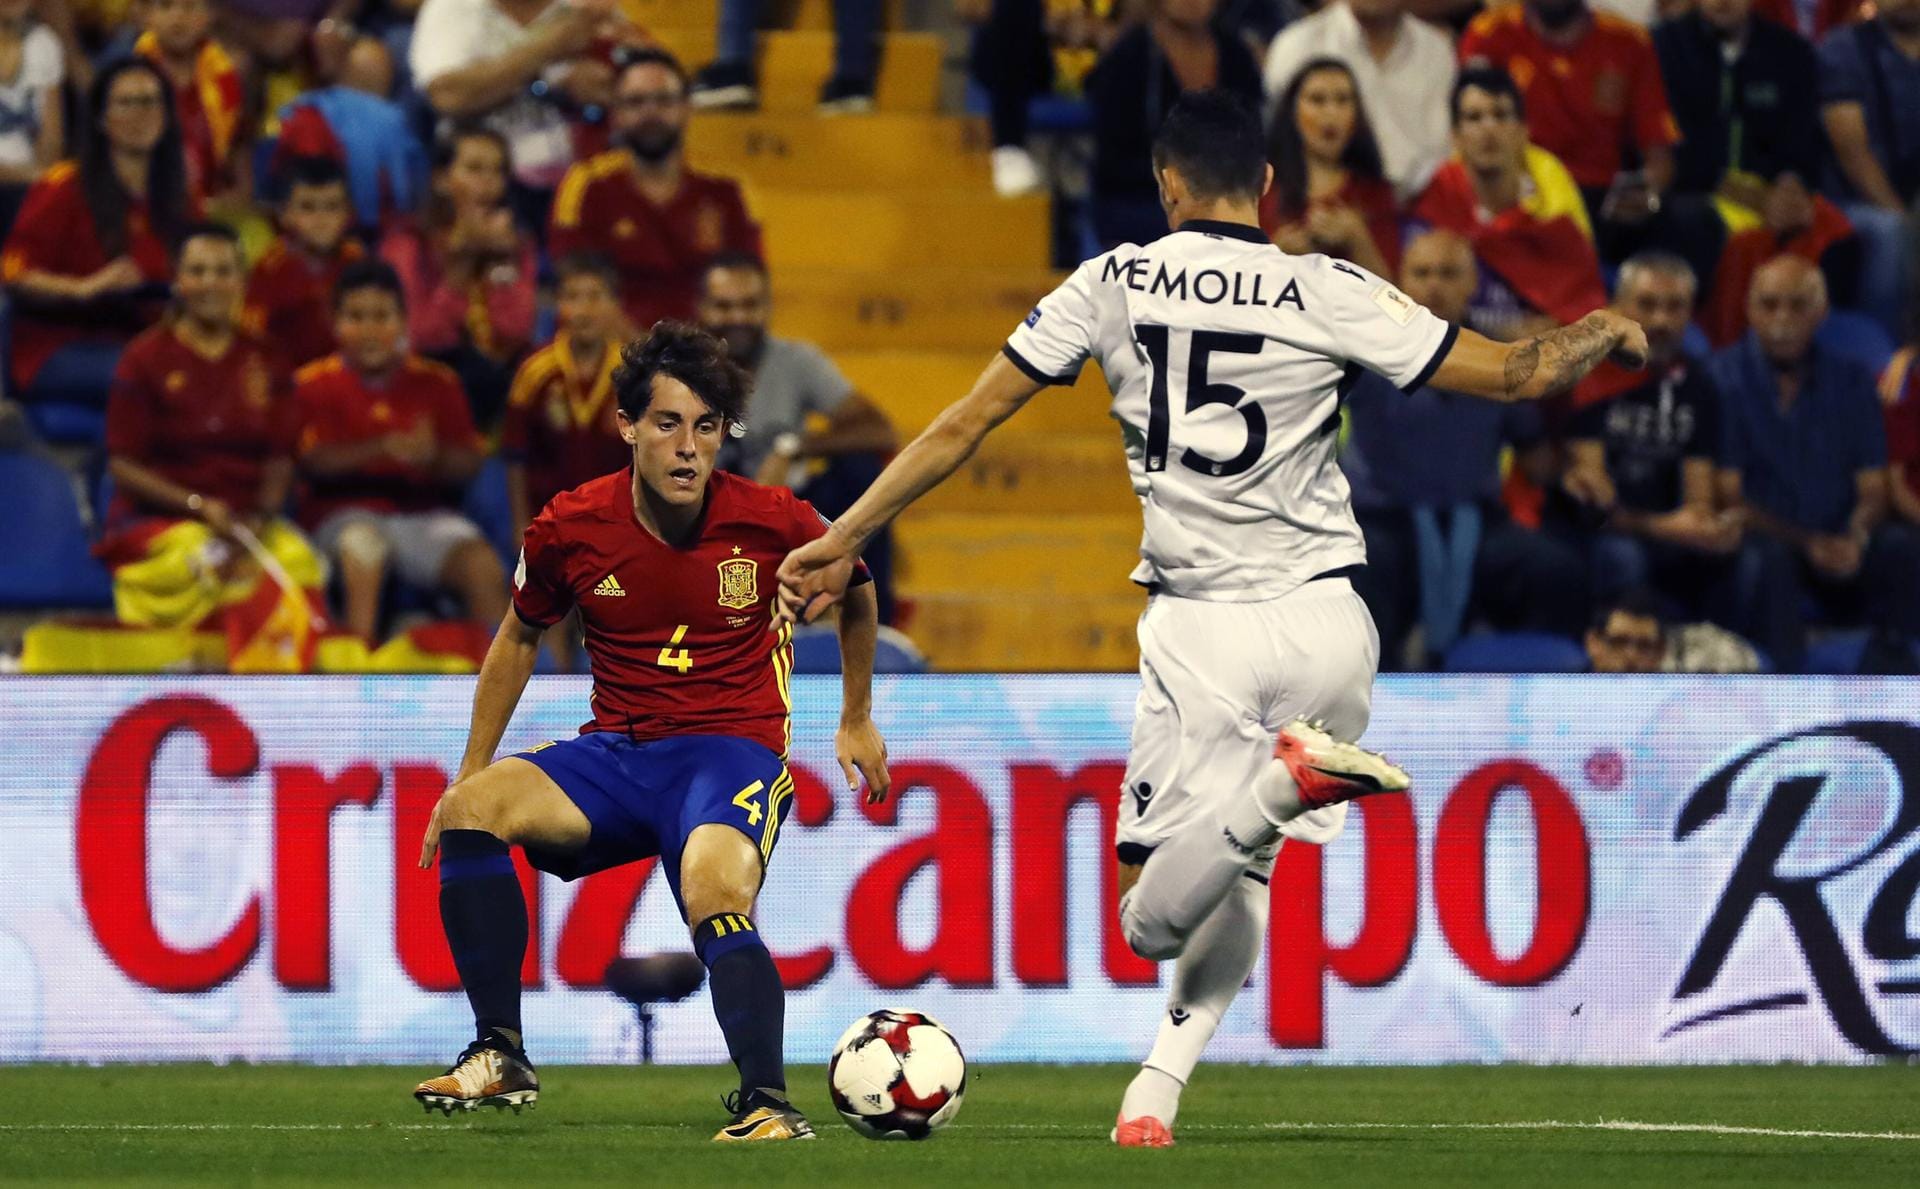 Oktober 2017: Nach der U21-EM gab Odriozola sein Debüt für die spanische Nationalmannschaft. Anfang Oktober 2017 bestritt er sein erstes Spiel für die "La Furia Roja". Beim 3:0-Sieg in der WM-Quali über Albanien steuerte Odriozola einen Assist bei. Seitdem hat er drei Länderspiele absolviert. Bei der Weltmeisterschaft 2018 stand der 24-Jährige zwar im Kader, spielte aber nicht.